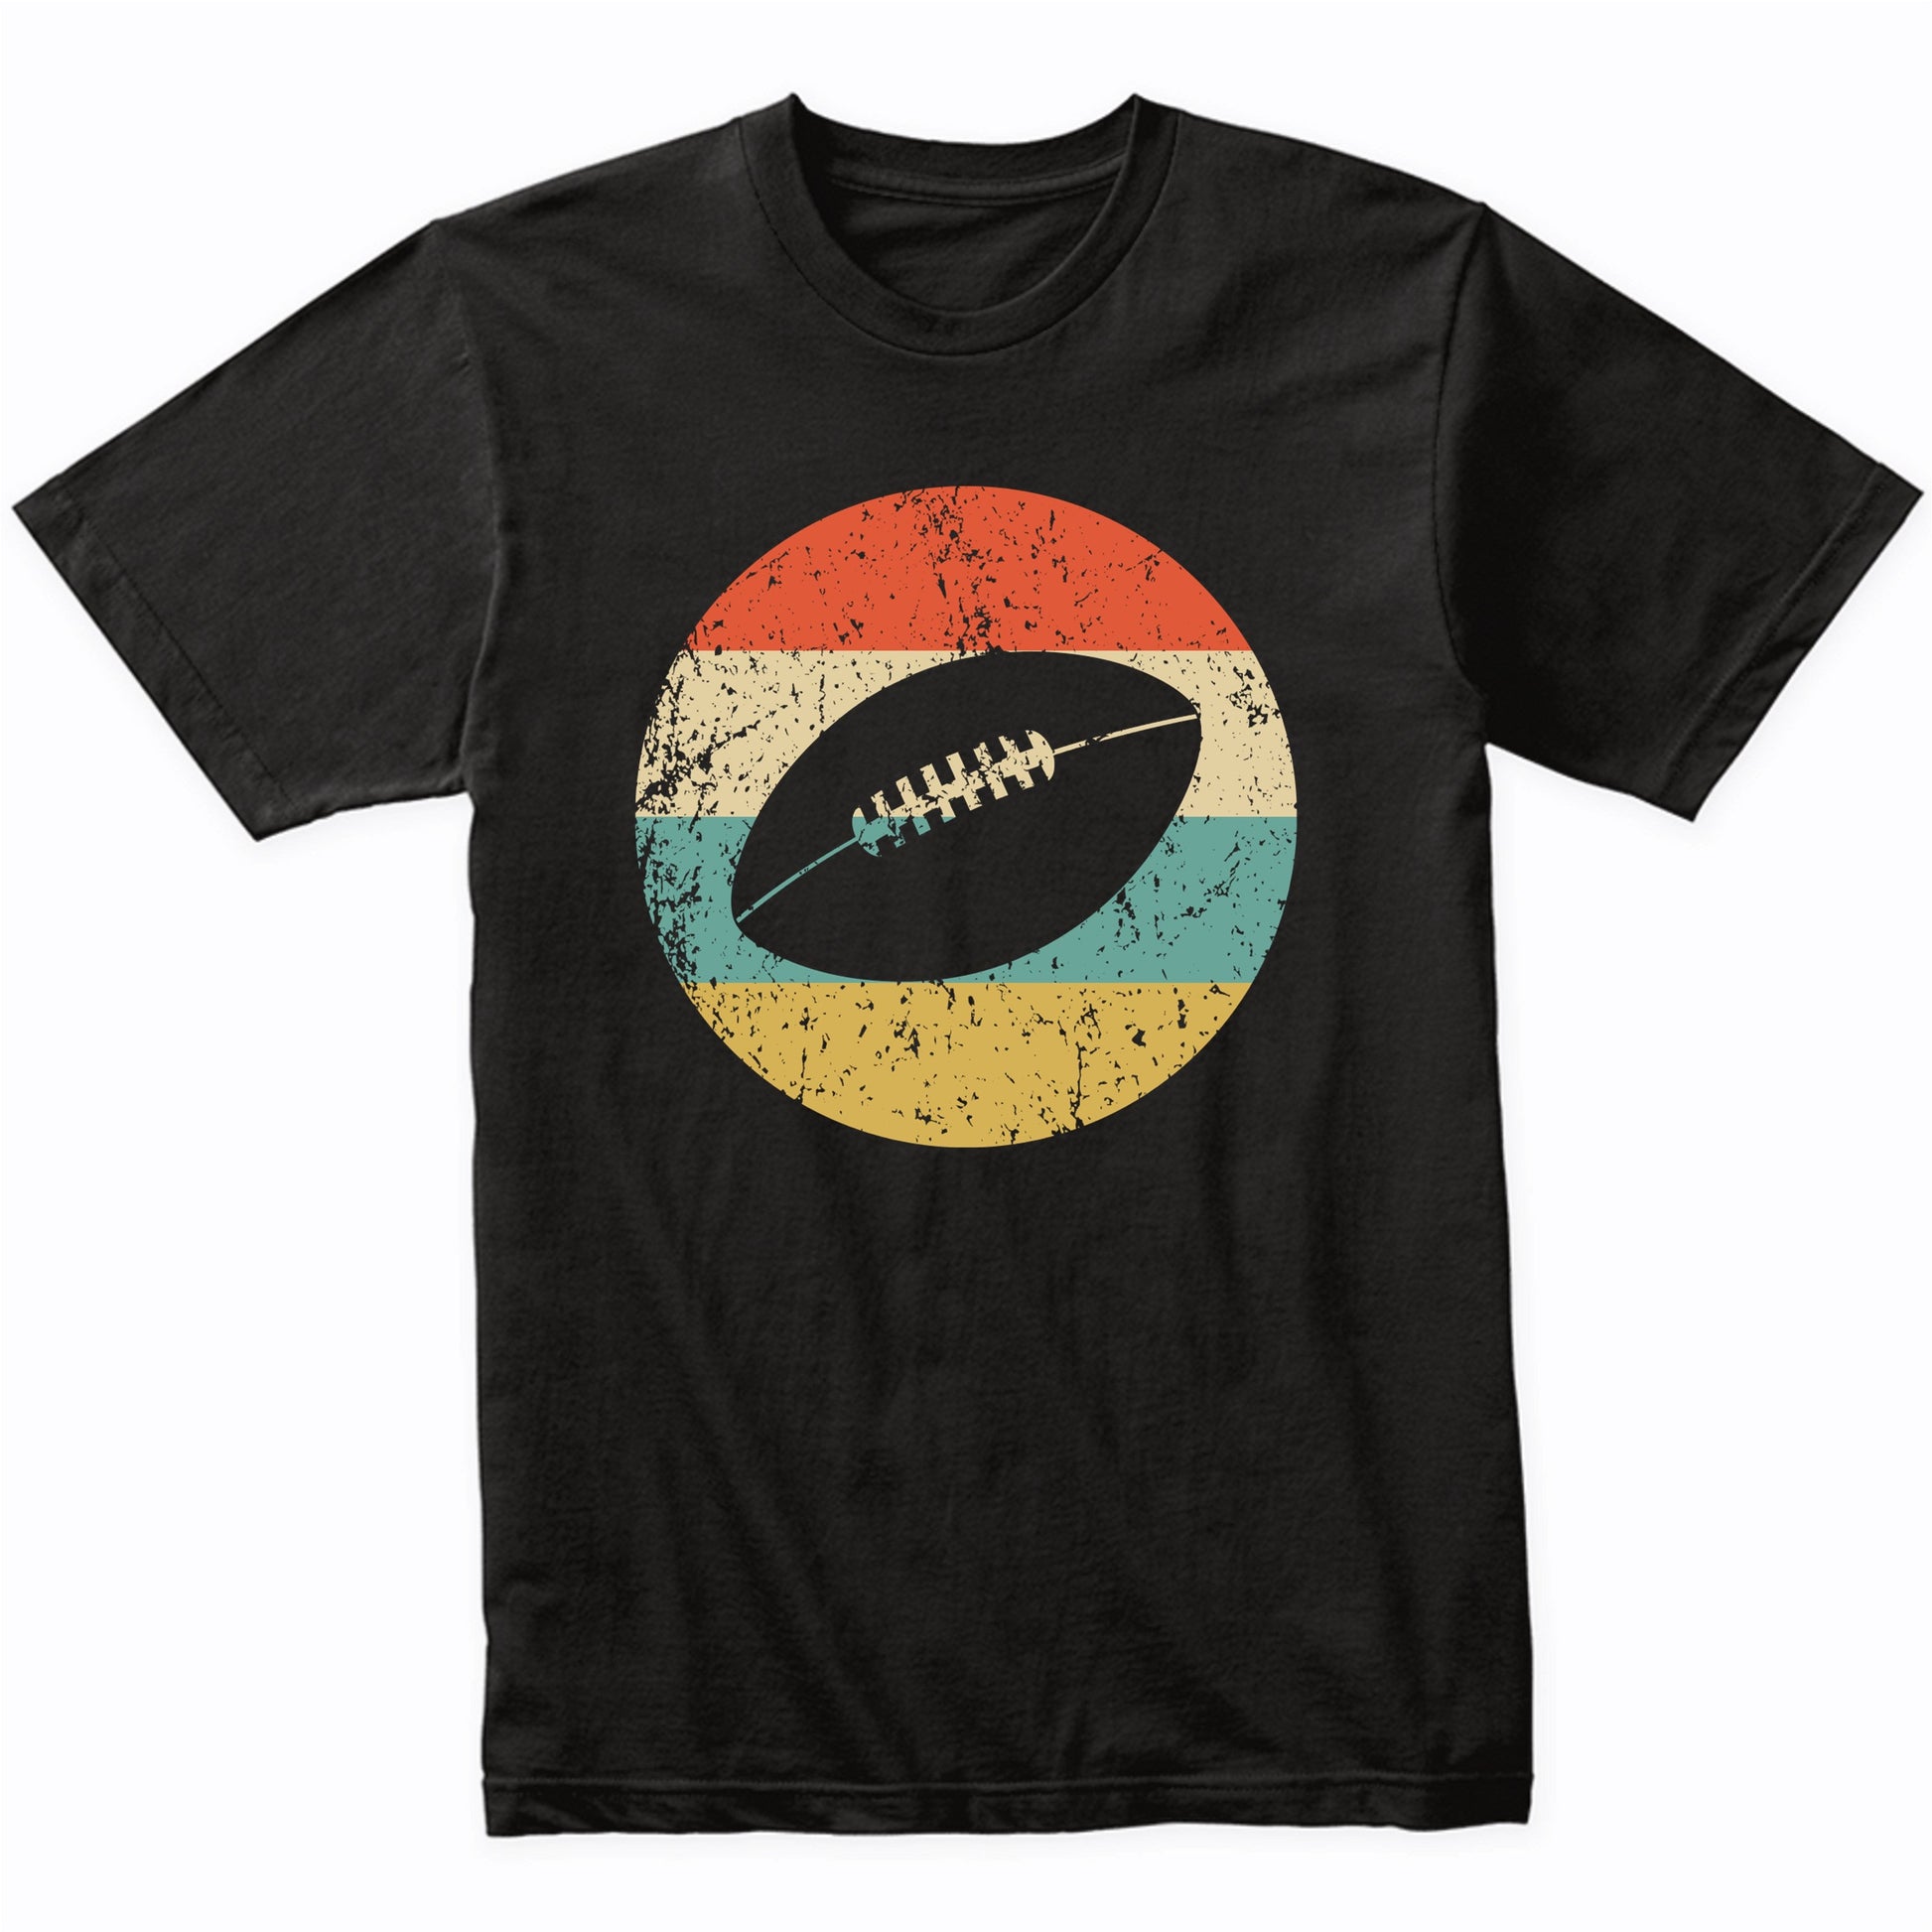 Football Shirt - Vintage Retro Football T-Shirt